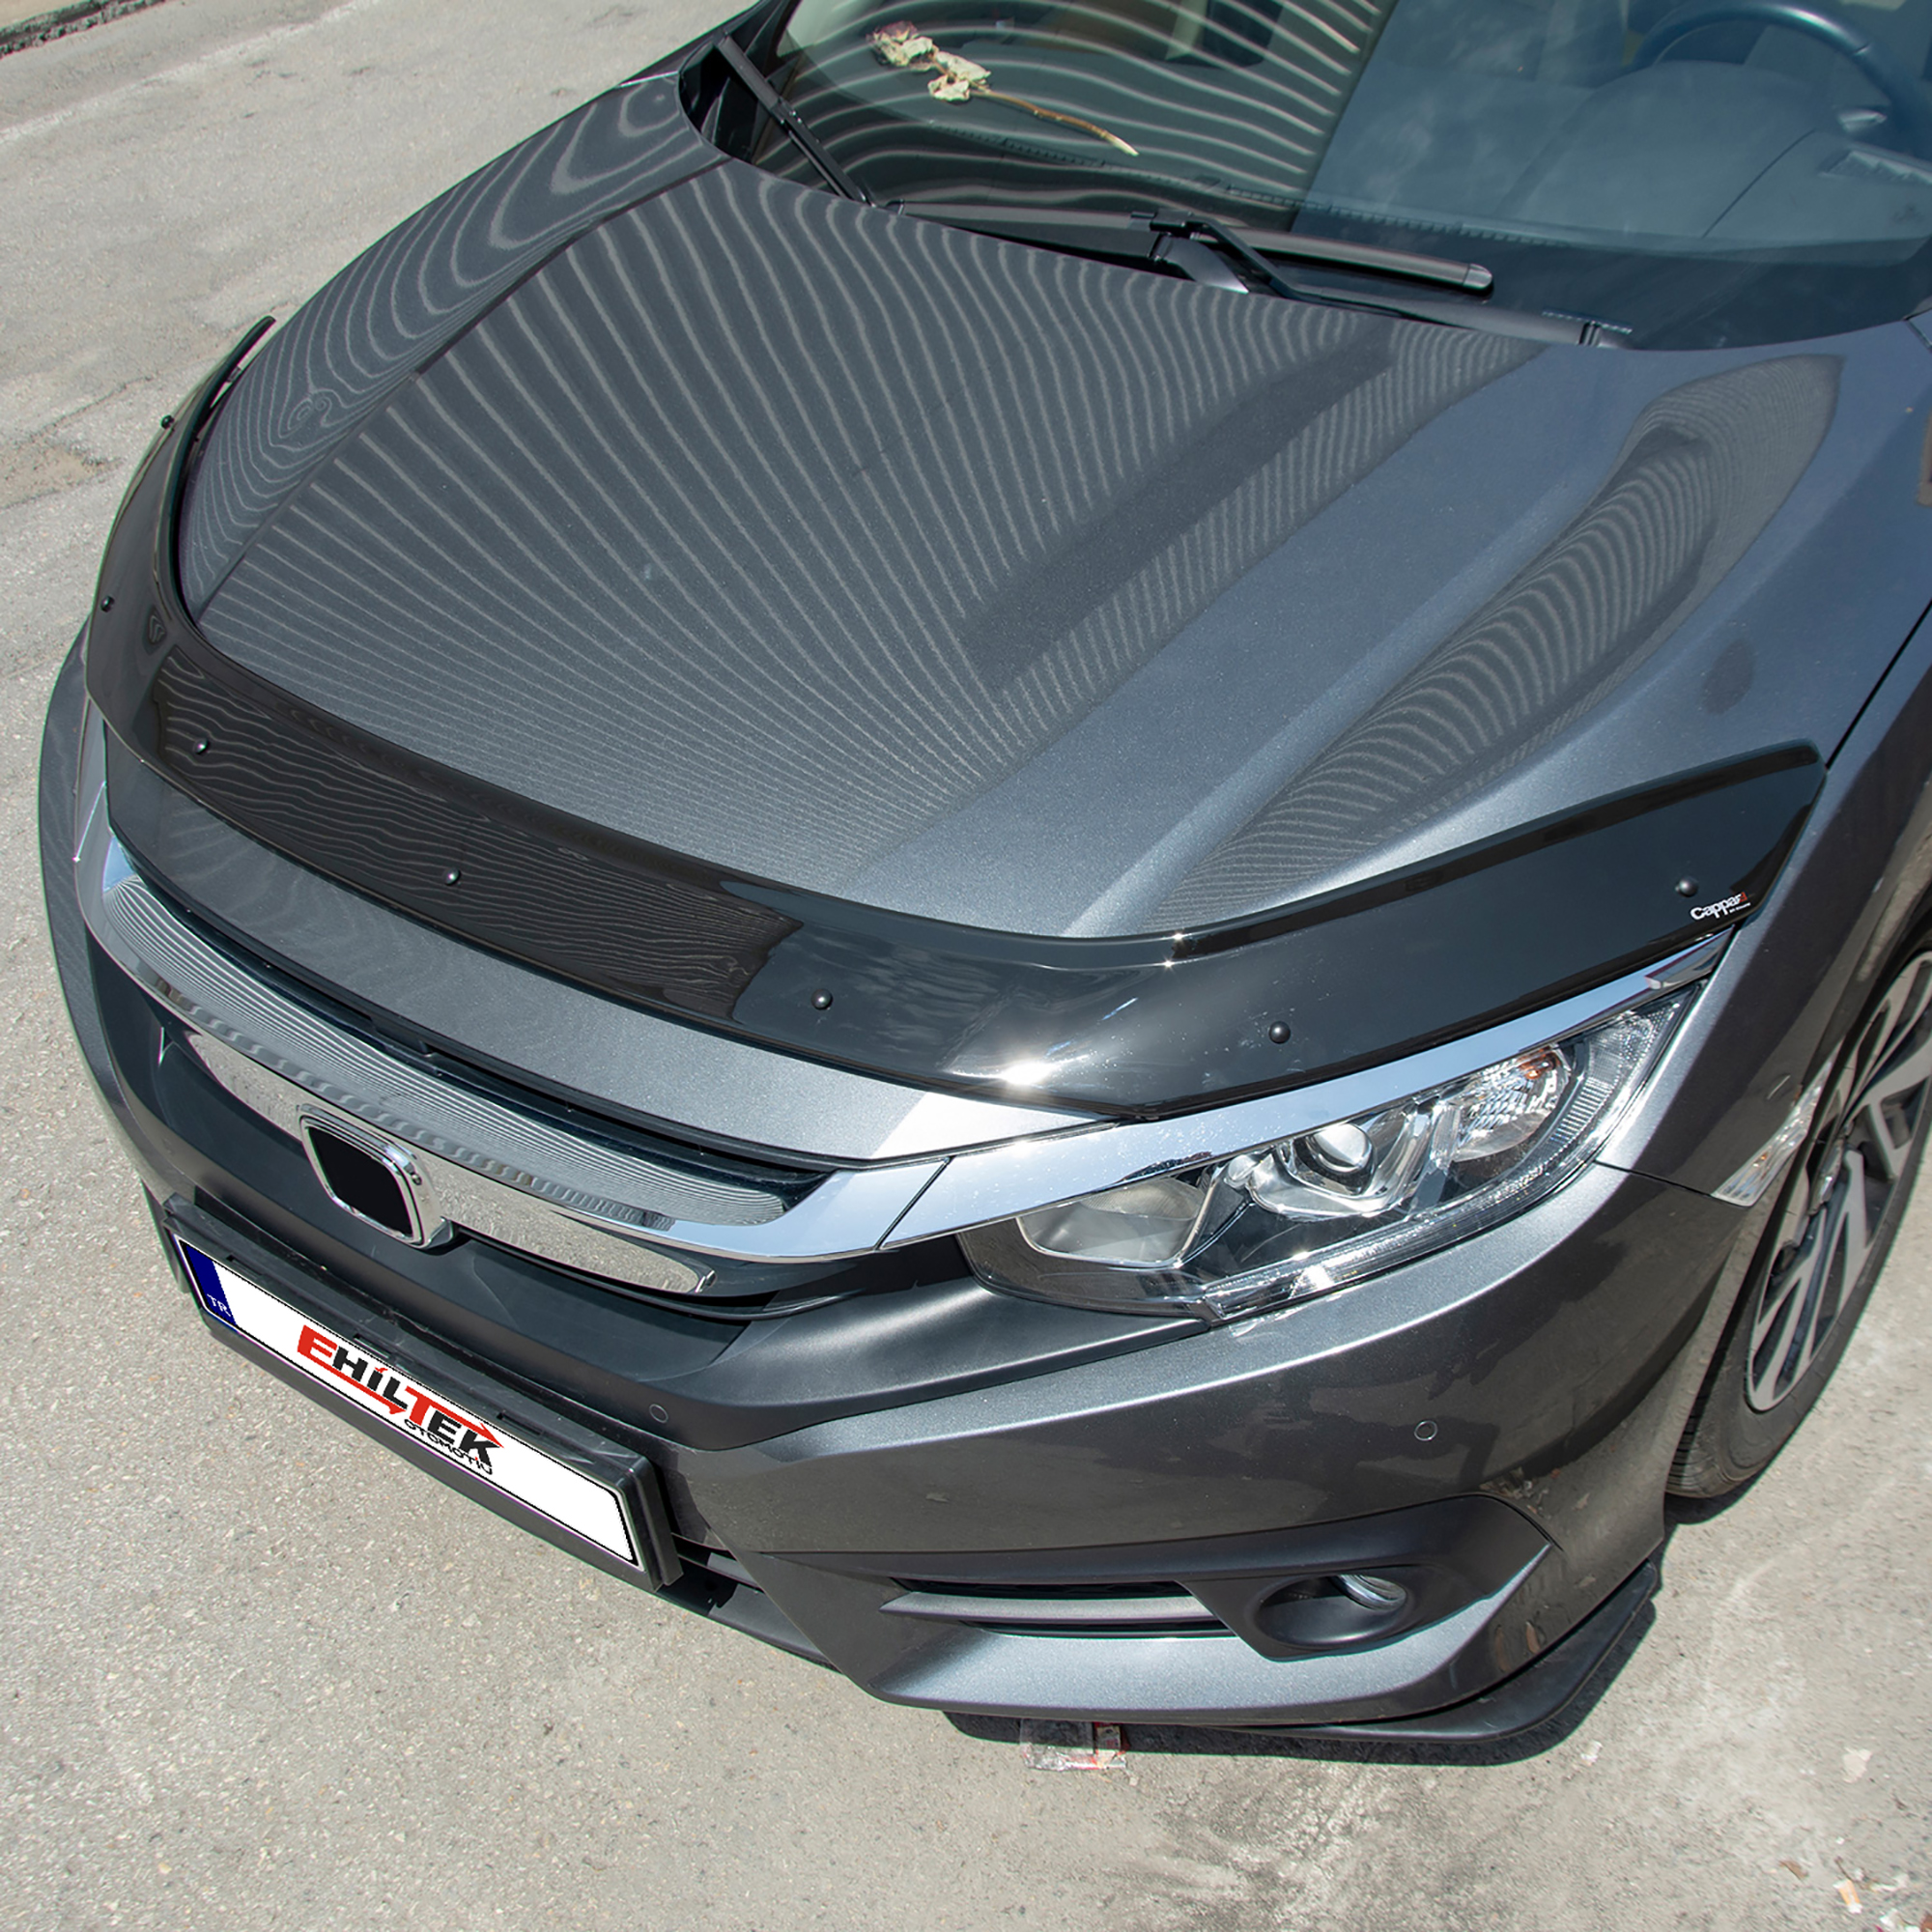 Honda Civic (2016+) - Ön Kaput Rüzgarlığı - (1 Parça ABS Plastik) - (SD-4 mm)